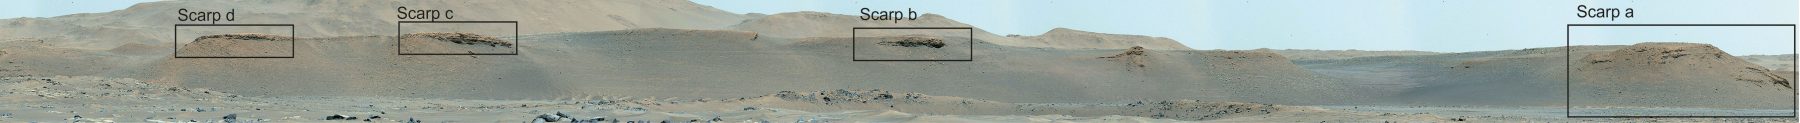 Обрывы вдоль дельты, которые будет изучать марсоход. Предоставлено: NASA / JPL-Caltech / ASU / MSSS.